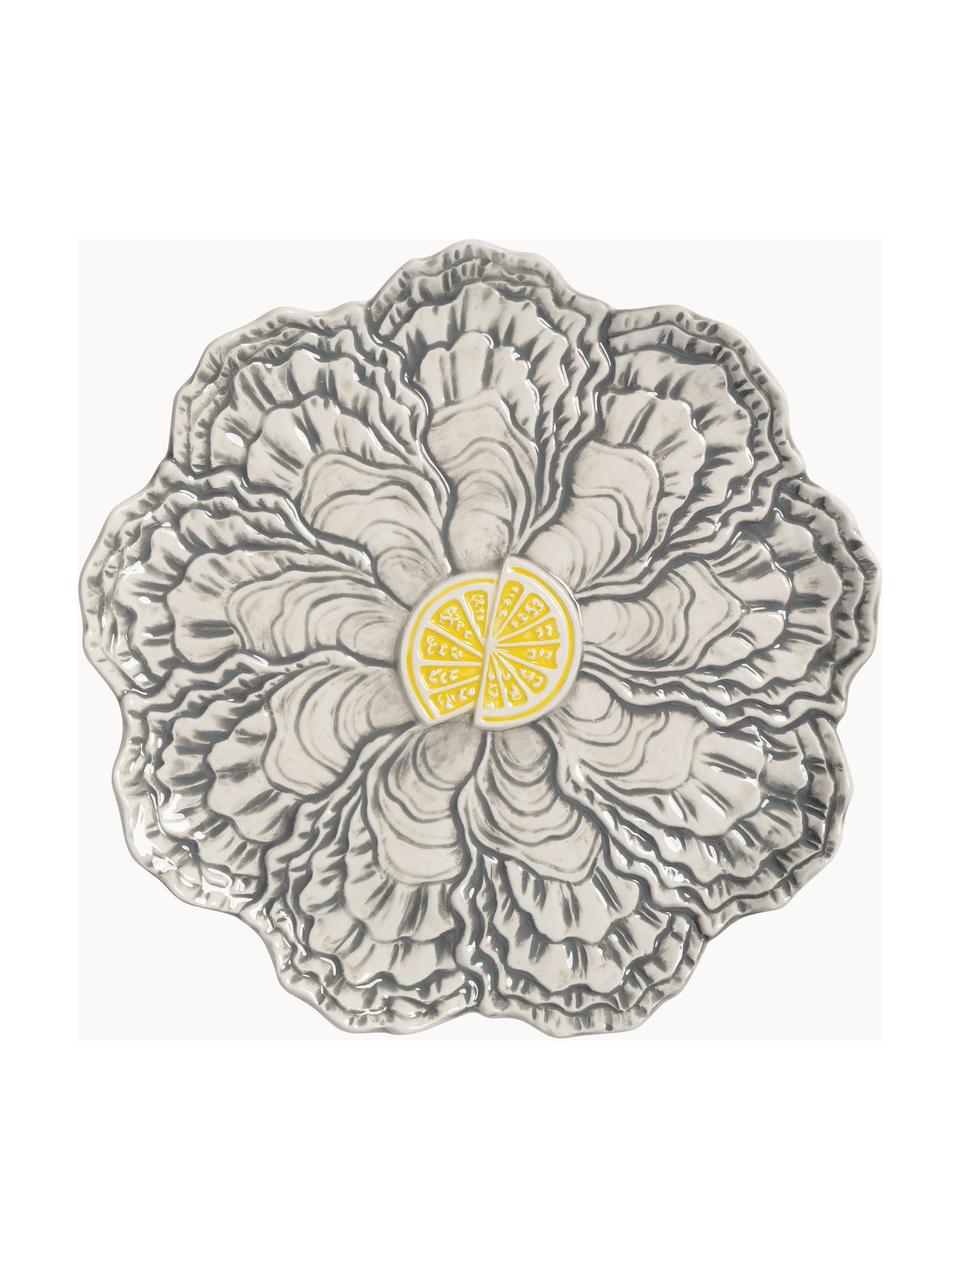 Snídaňový talíř z dolomitu Oyster, Dolomit, glazovaný, Žlutá, šedá, tlumeně bílá, Ø 23 cm